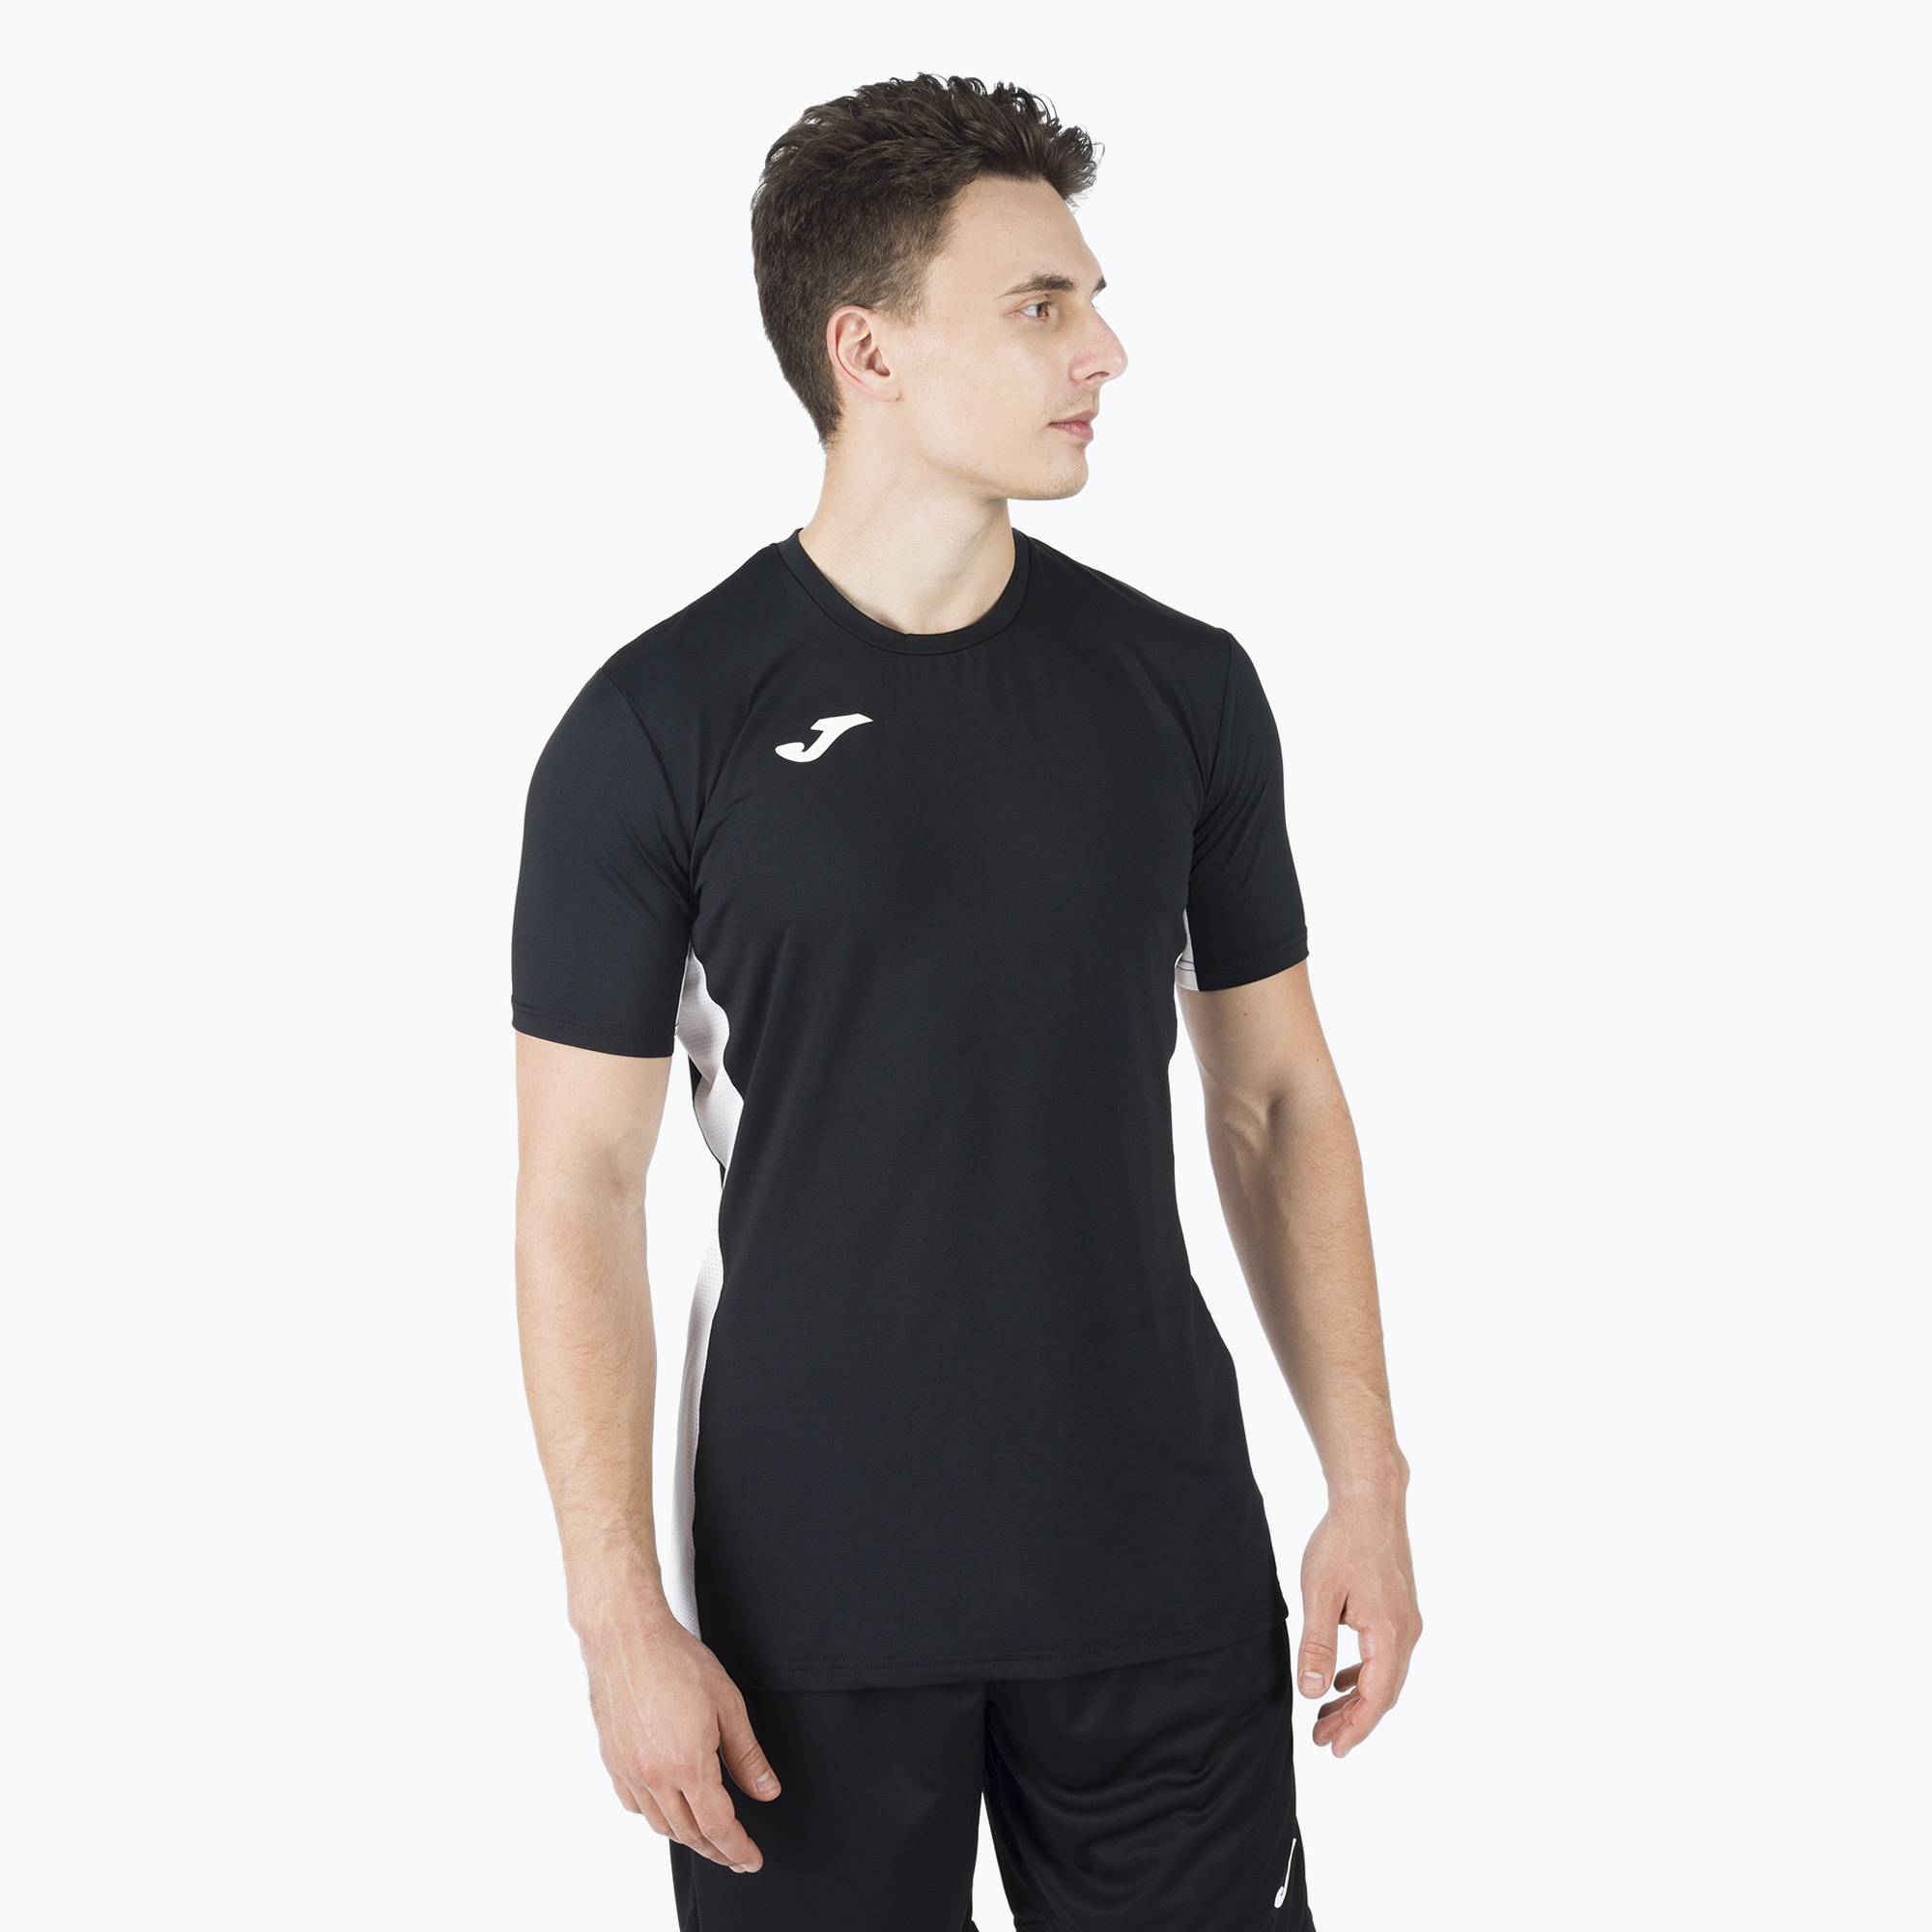 Joma Superliga pánske volejbalové tričko čierno-biele 101469